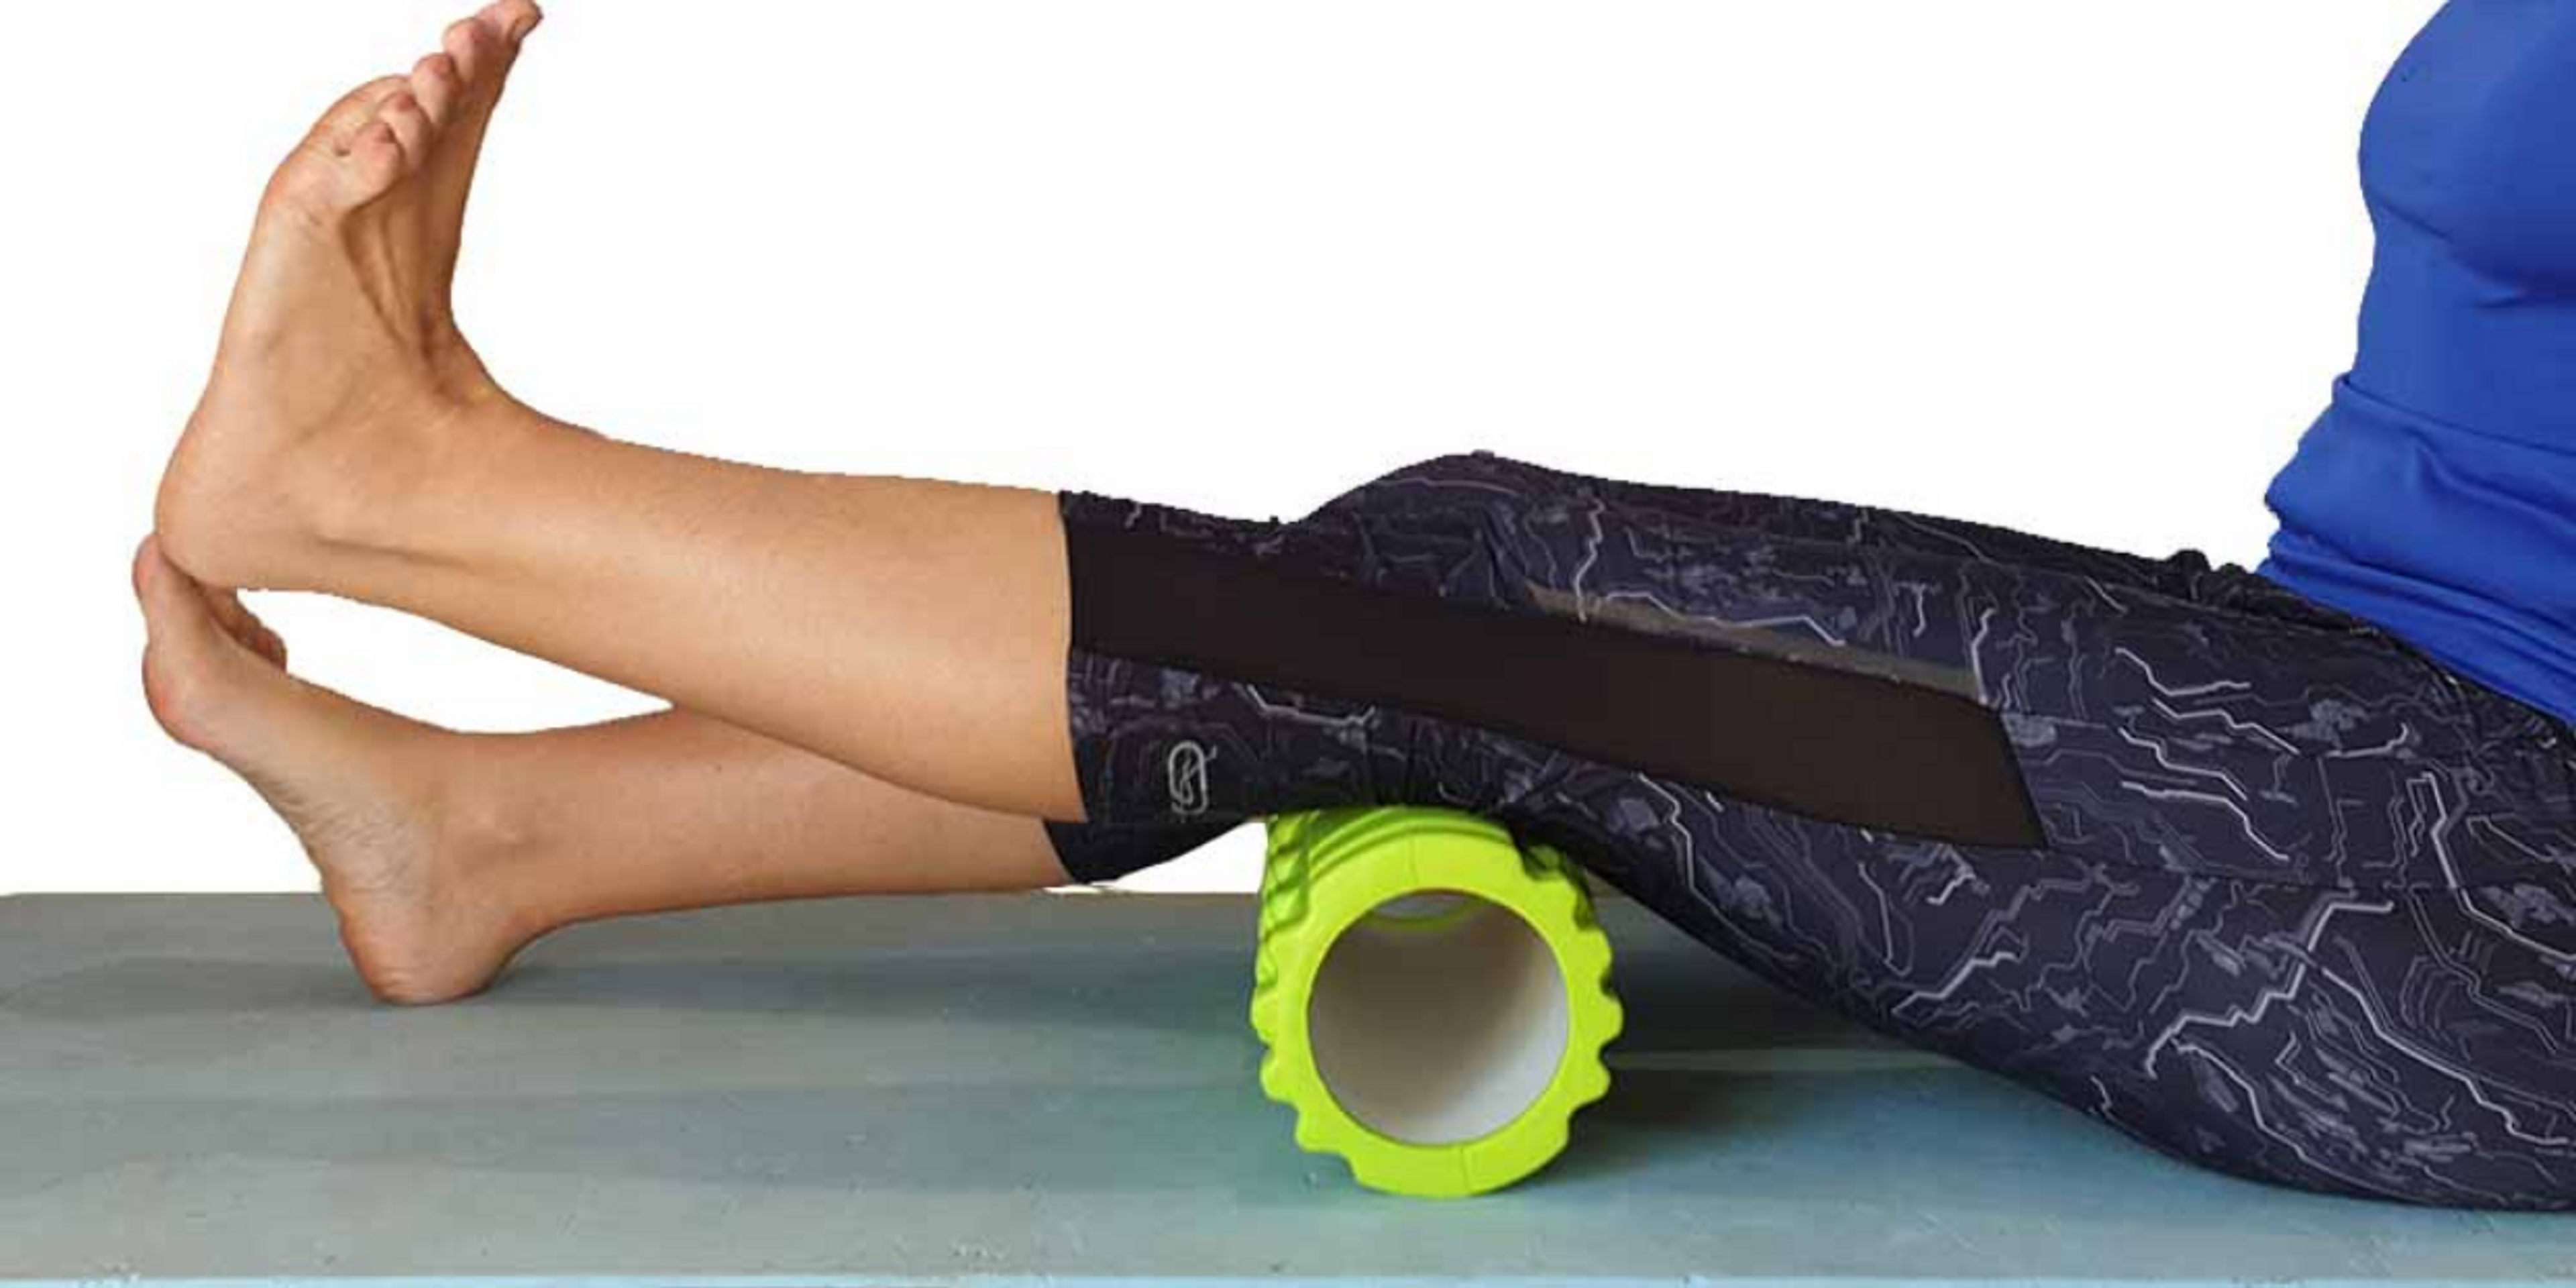 L’exercice d’extension active du genou effectué sur une serviette enroulée ou un rouleau en mousse active les quadriceps et aide à améliorer l’amplitude du mouvement d’extension.